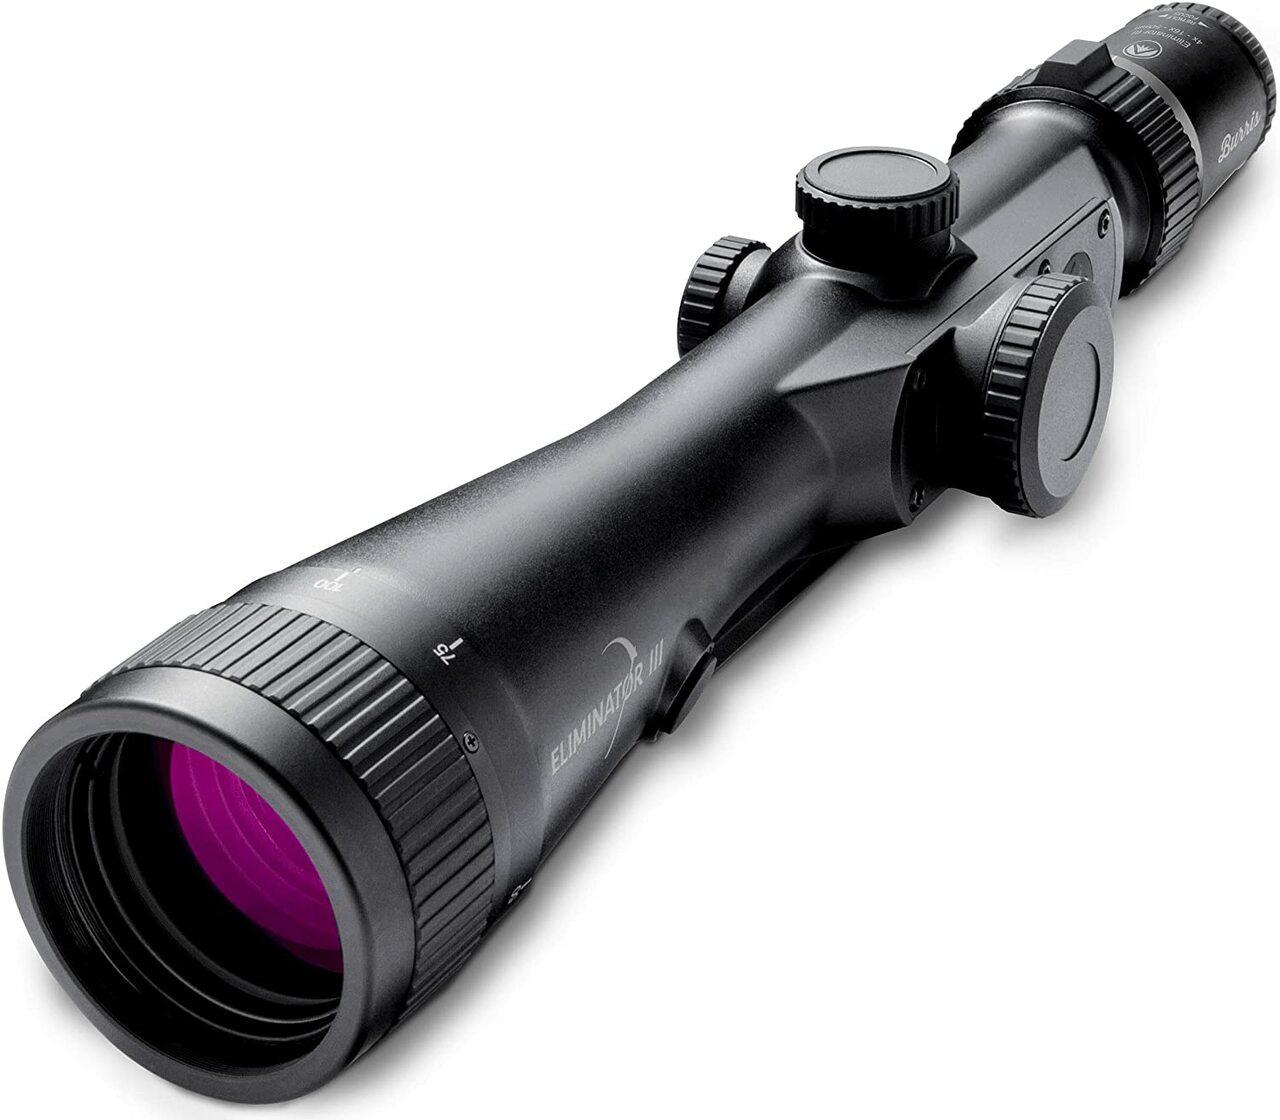 Burris Eliminator III Laser Scope 4-16x50mm X-96 Reticle Matte - $899.99 ($9.99 S/H on firearms)